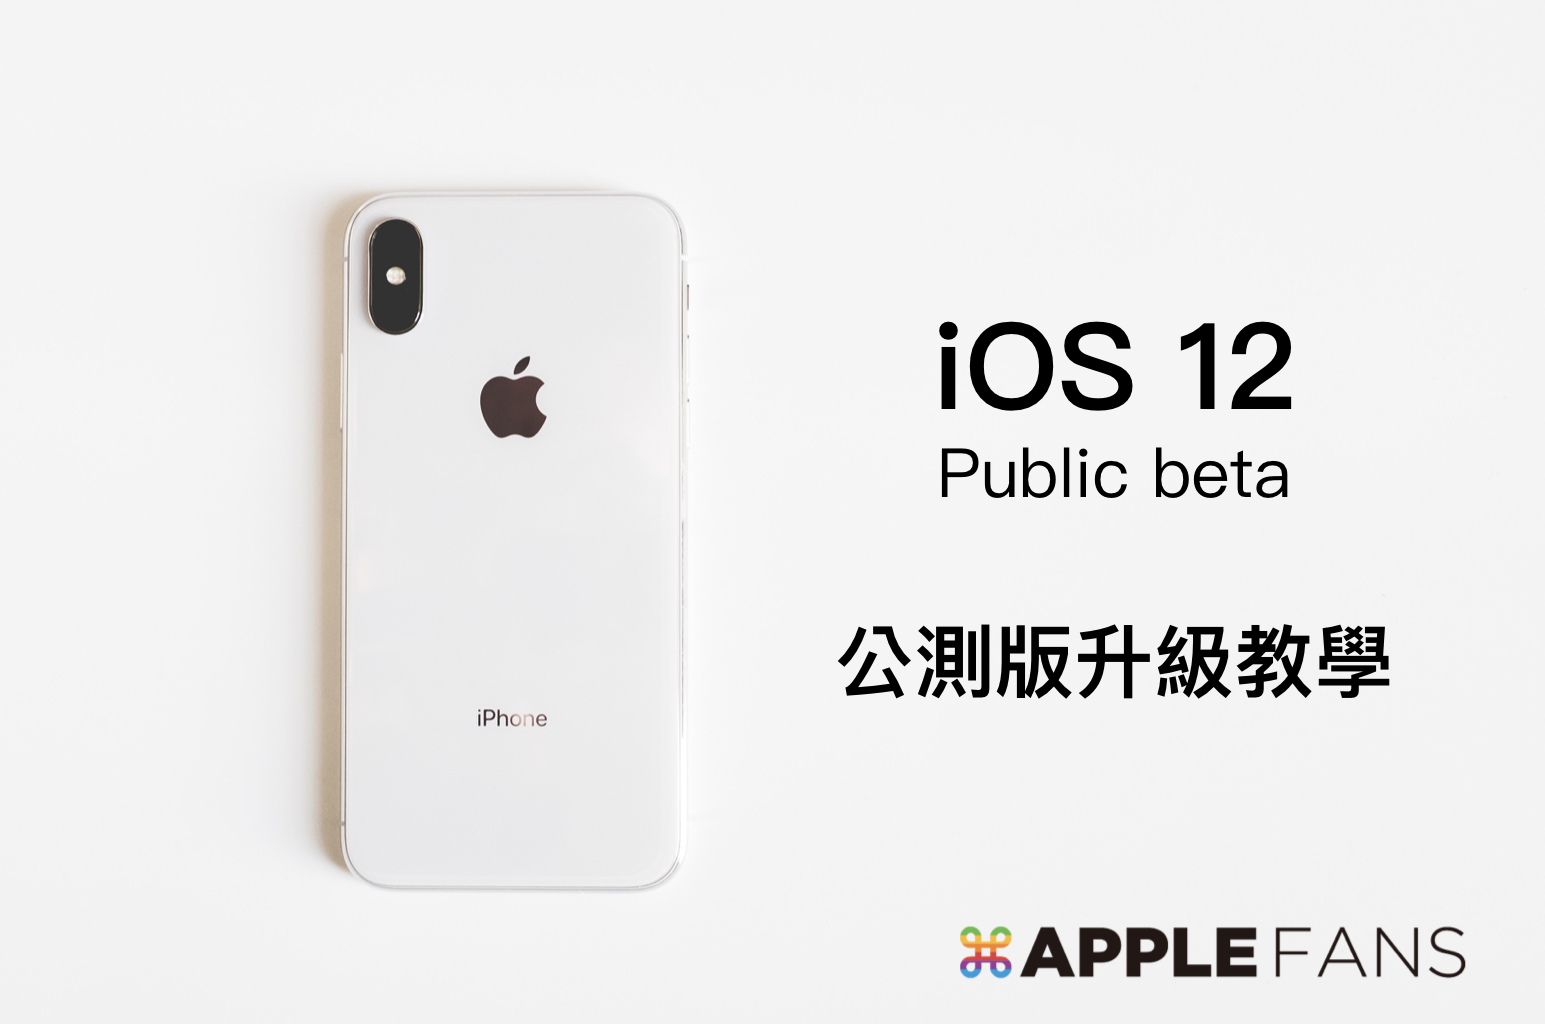 iOS 12 Public beta